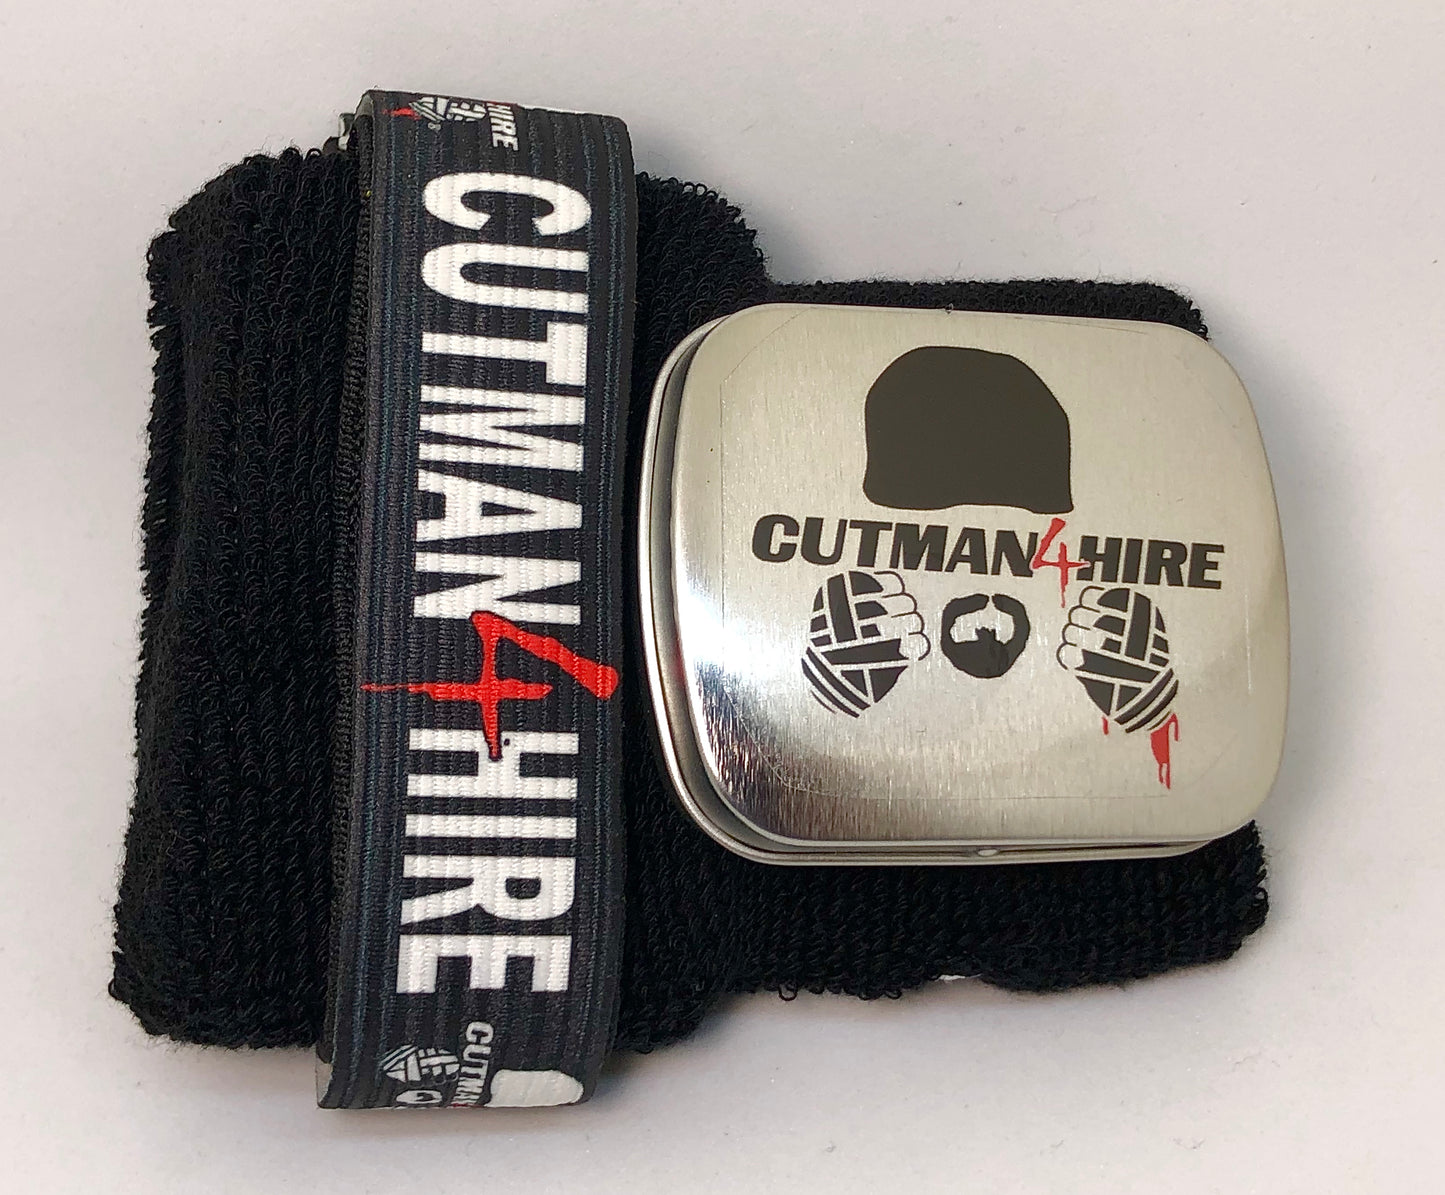 Munequera Cutman4hire Elite MX